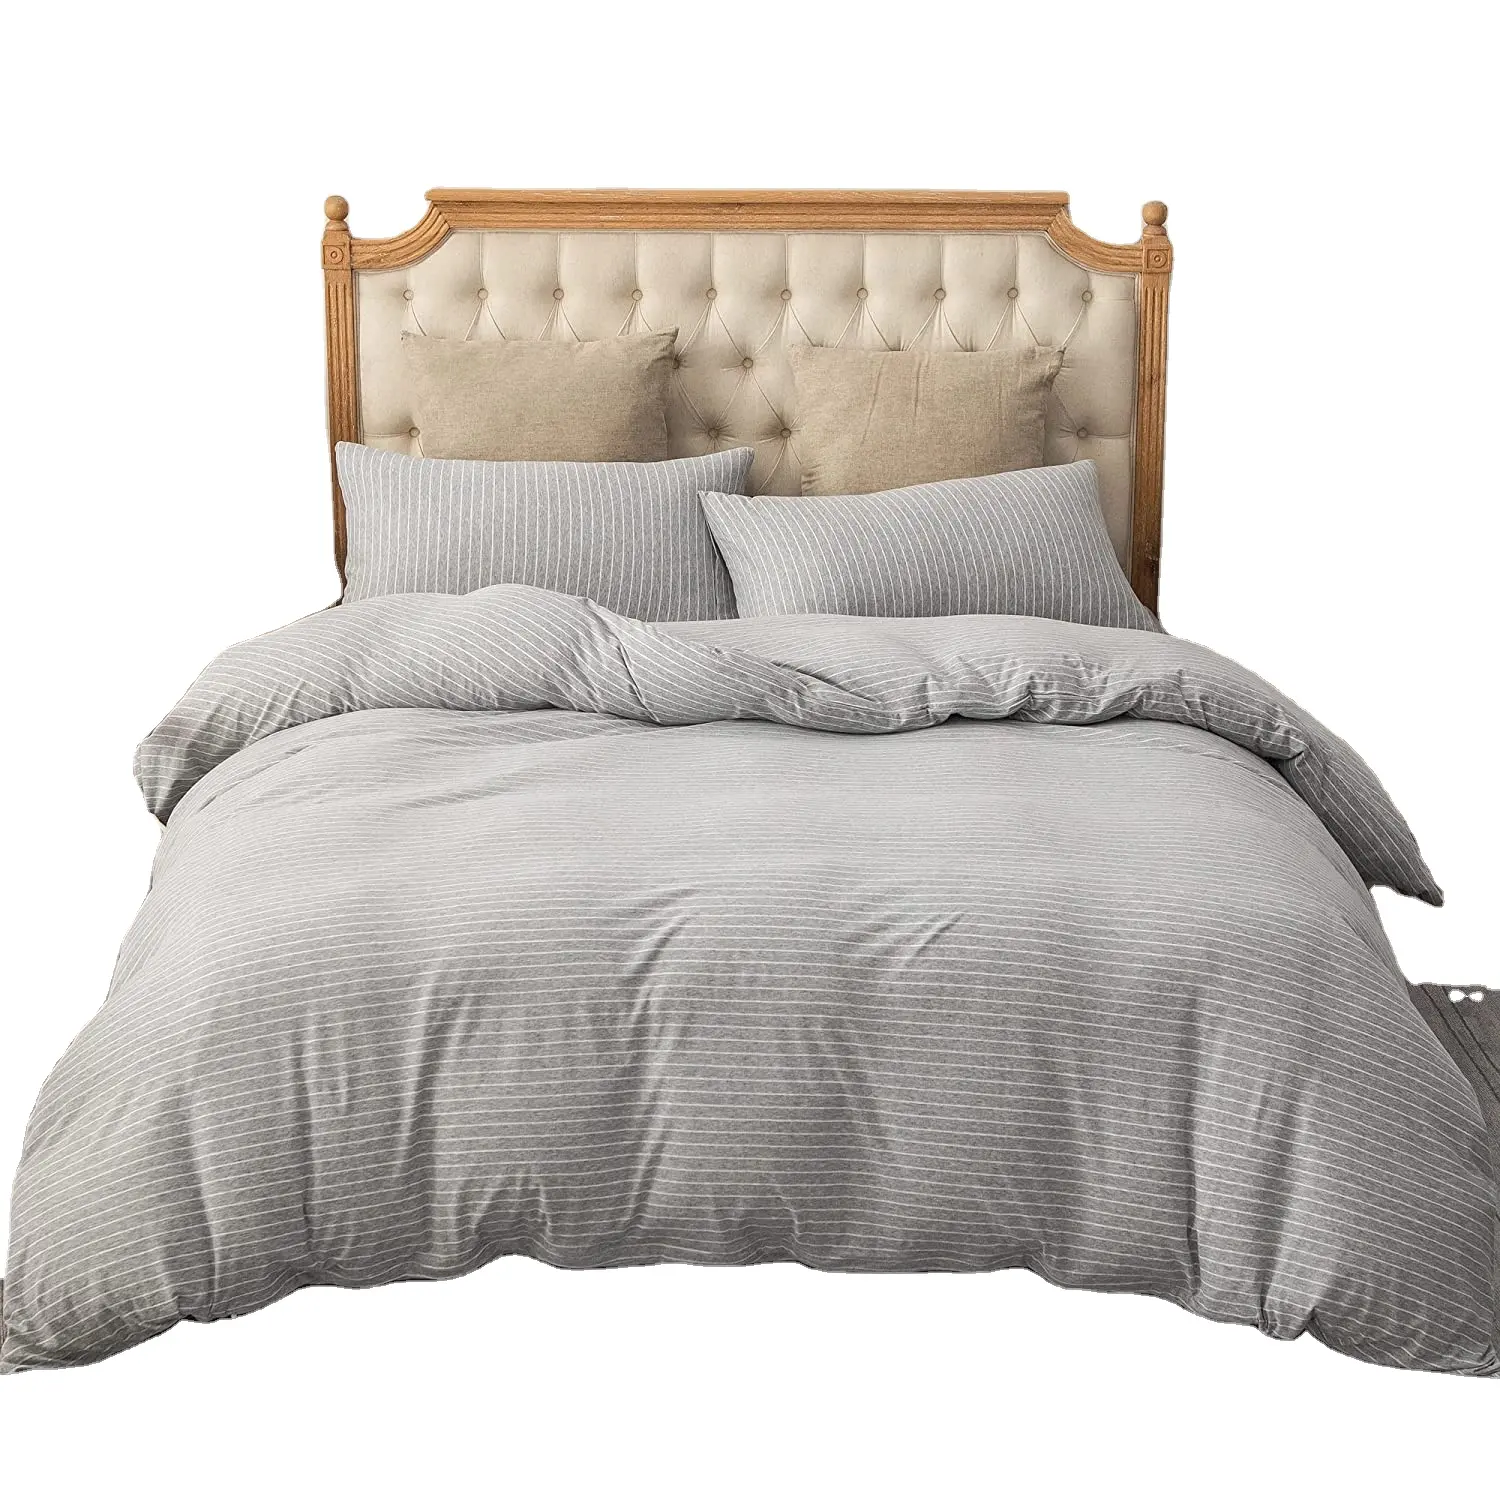 Jogo de cama de 100% algodão, conjunto de cama personalizado, acabado com fios, tecido, capa de edredão, fronha, cobertores sabanas de cama